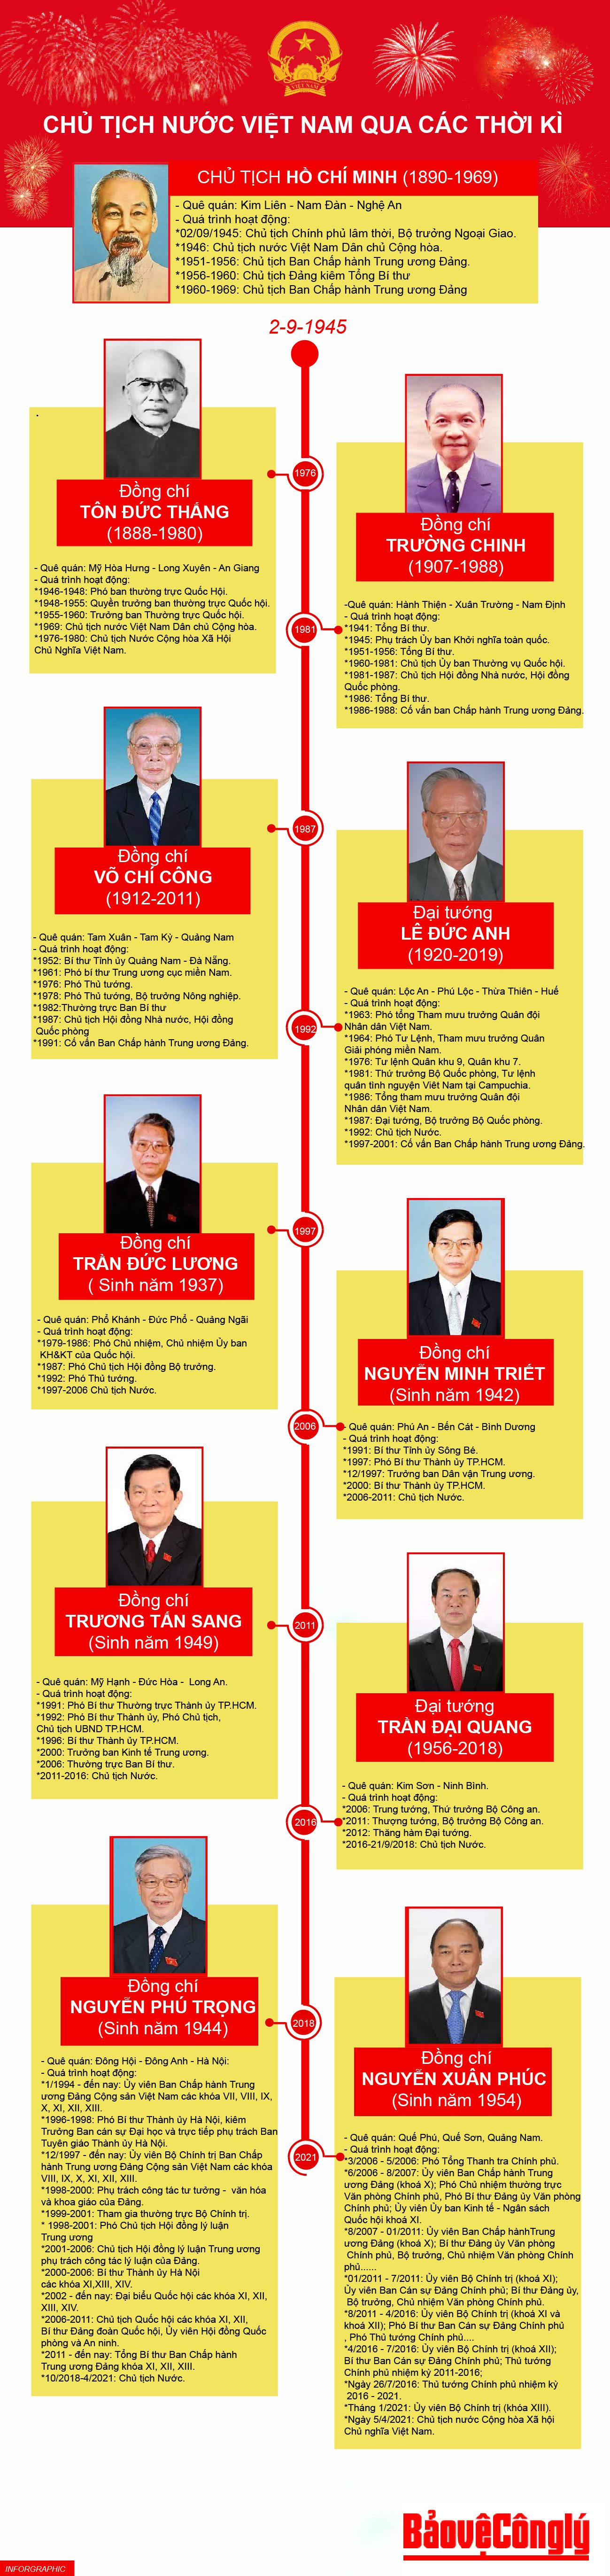 Chủ tịch nước Việt Nam là một nhân vật cụ thể đại diện cho sự phát triển và quản lý của đất nước. Hãy cùng tìm hiểu về cuộc đời và sự nghiệp của các Chủ tịch nước Việt Nam và khám phá những dấu ấn đặc biệt của họ trong lịch sử Việt Nam.